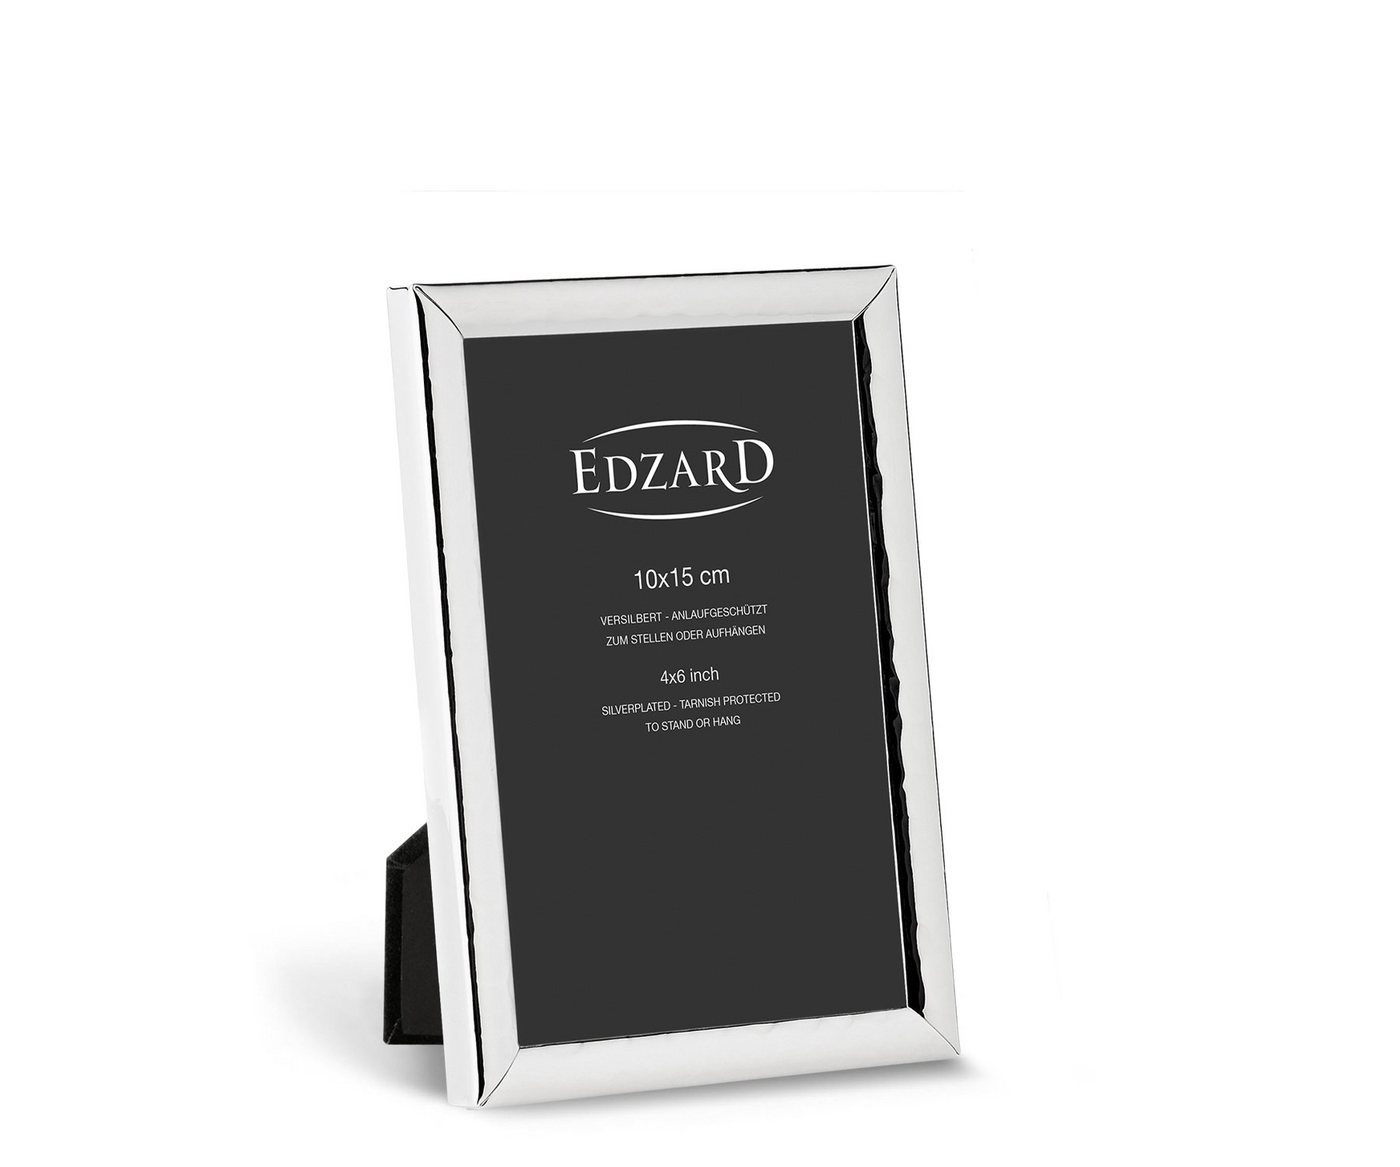 EDZARD Bilderrahmen Riga, versilbert und anlaufgeschützt, für 10x15 cm Bilder – Fotorahmen von EDZARD